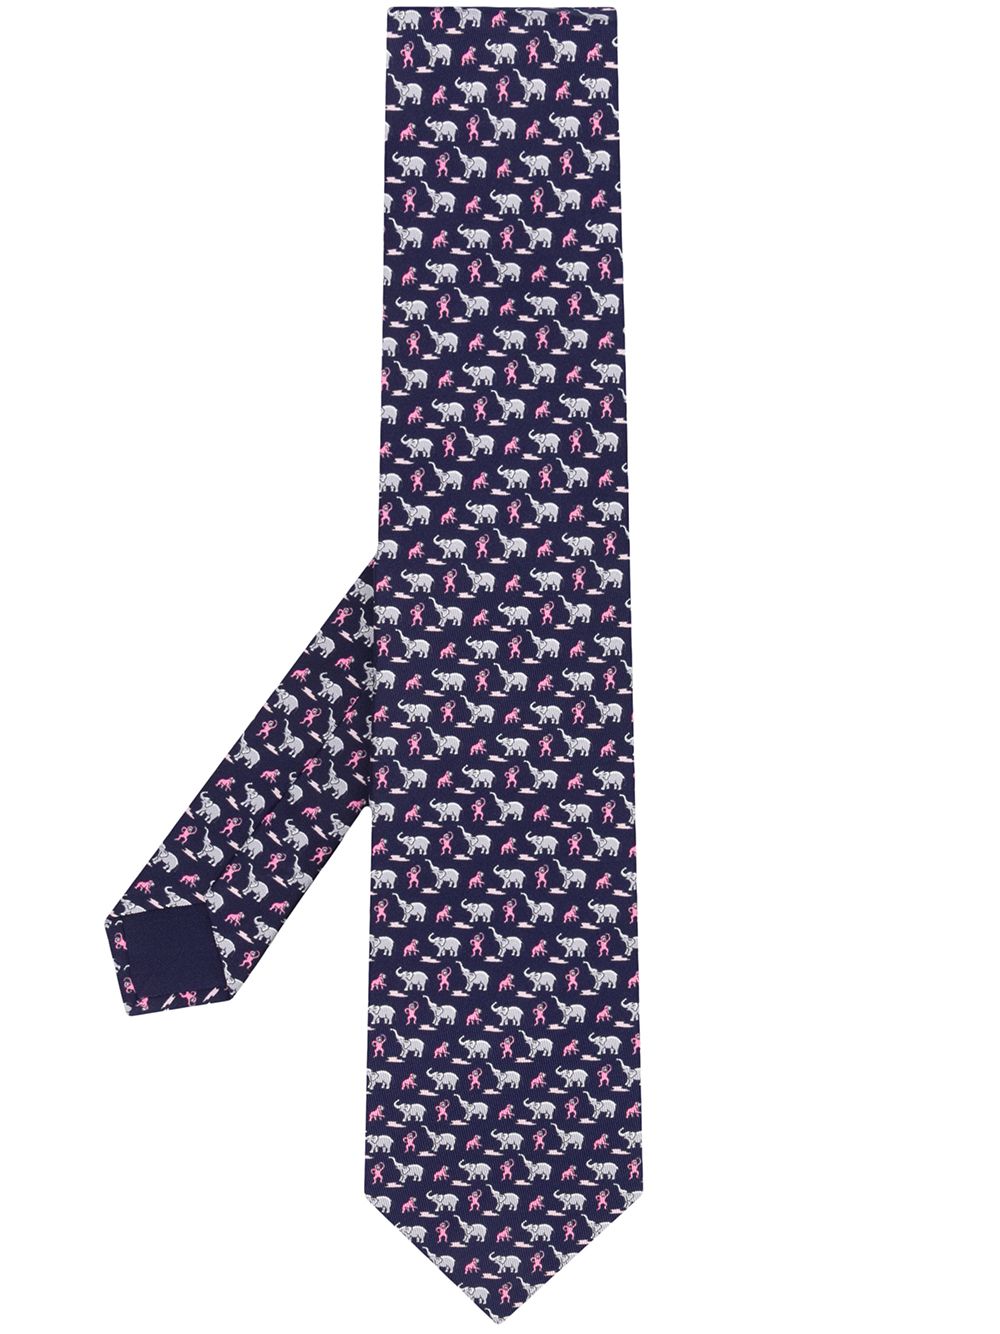 фото Hermès галстук 2010-х годов с анималистичным принтом